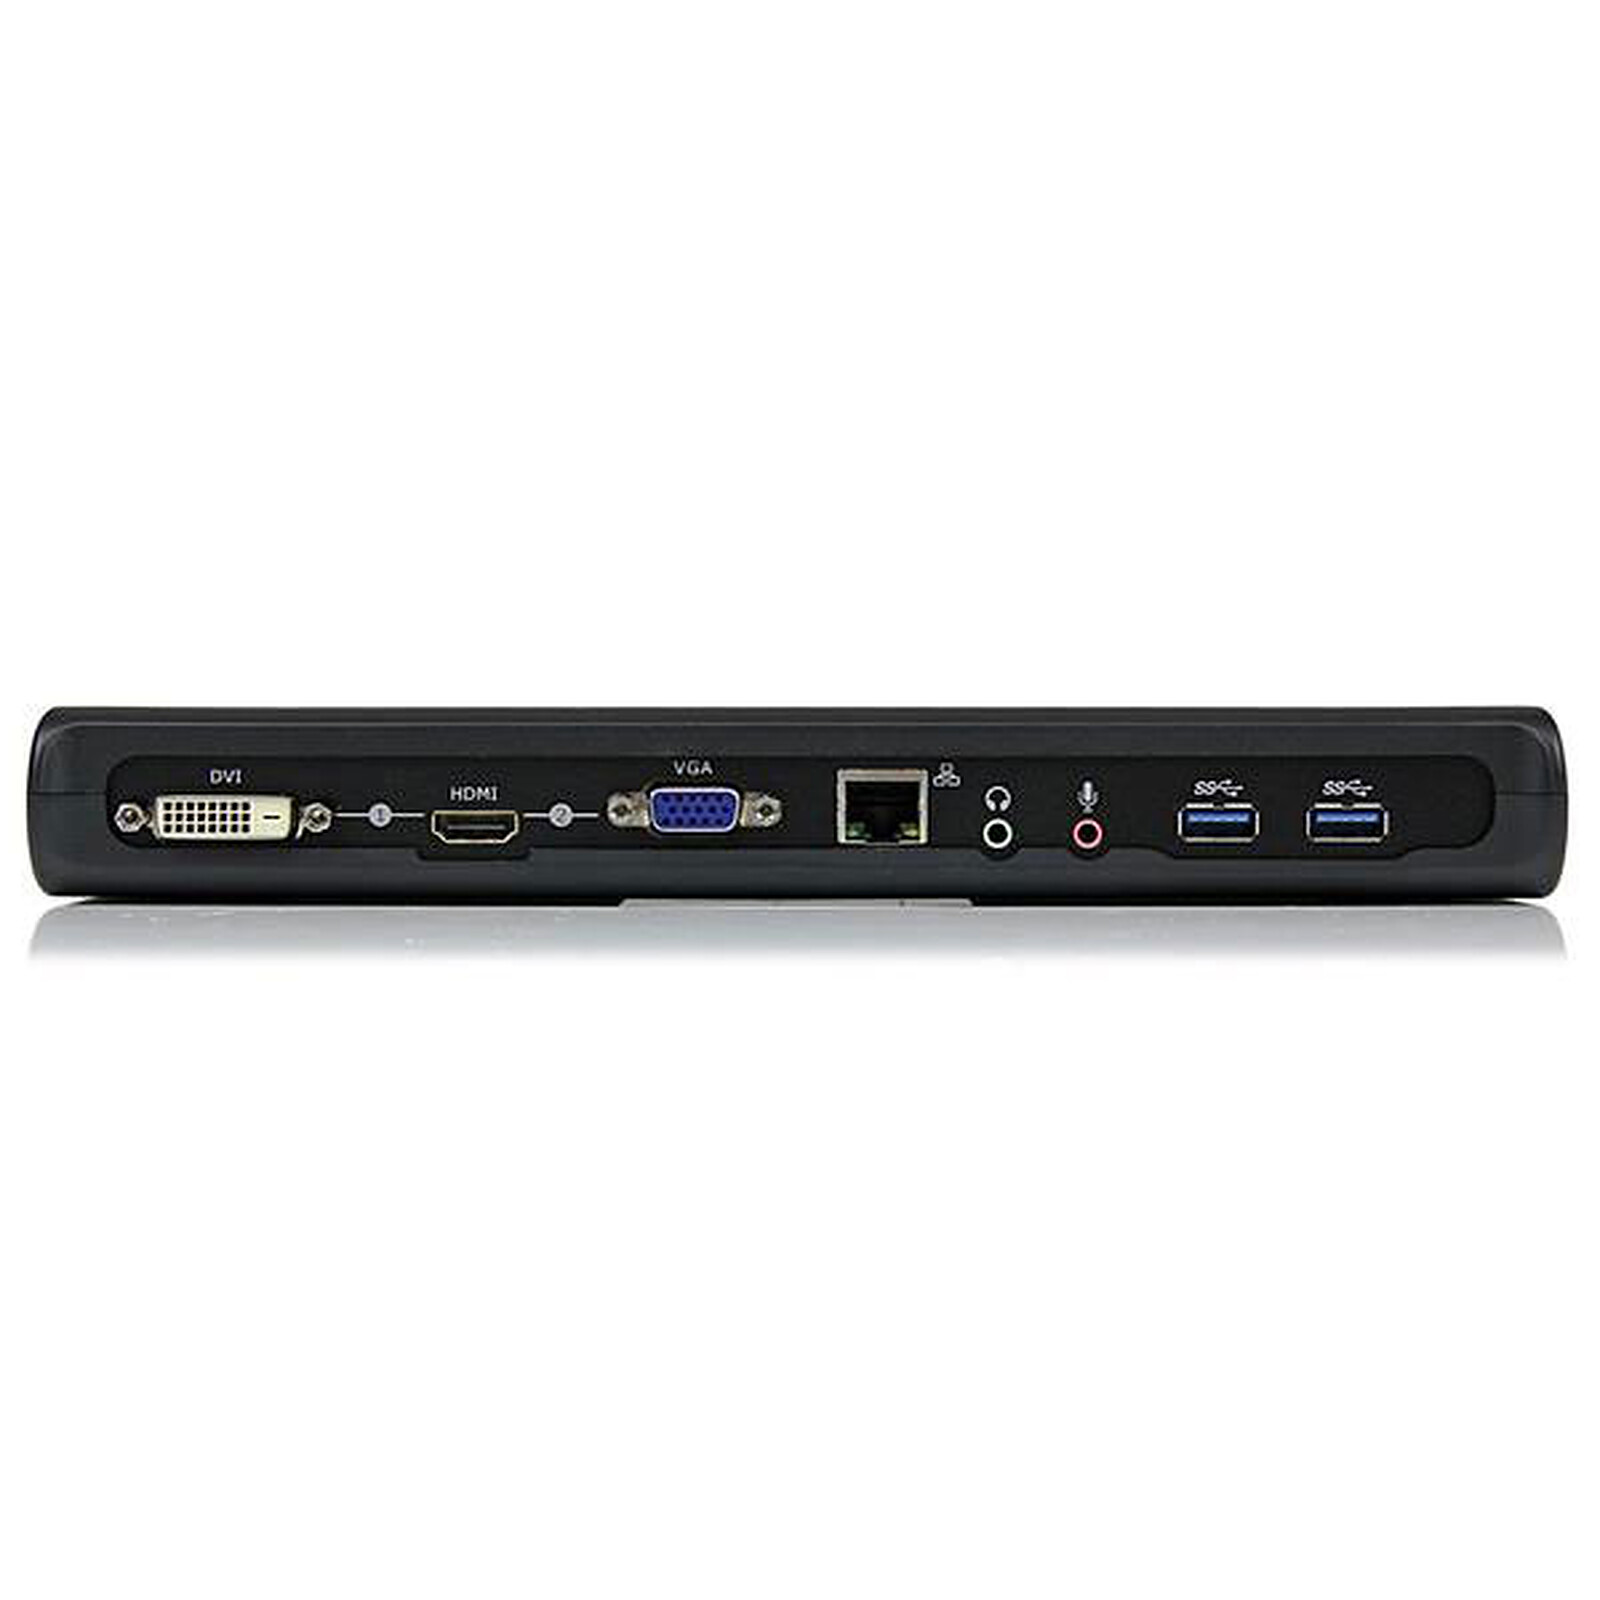 Mini station d’accueil USB 3.0 universelle pour ordinateur portable avec  HDMI ou VGA, Gigabit Ethernet, USB 3.0